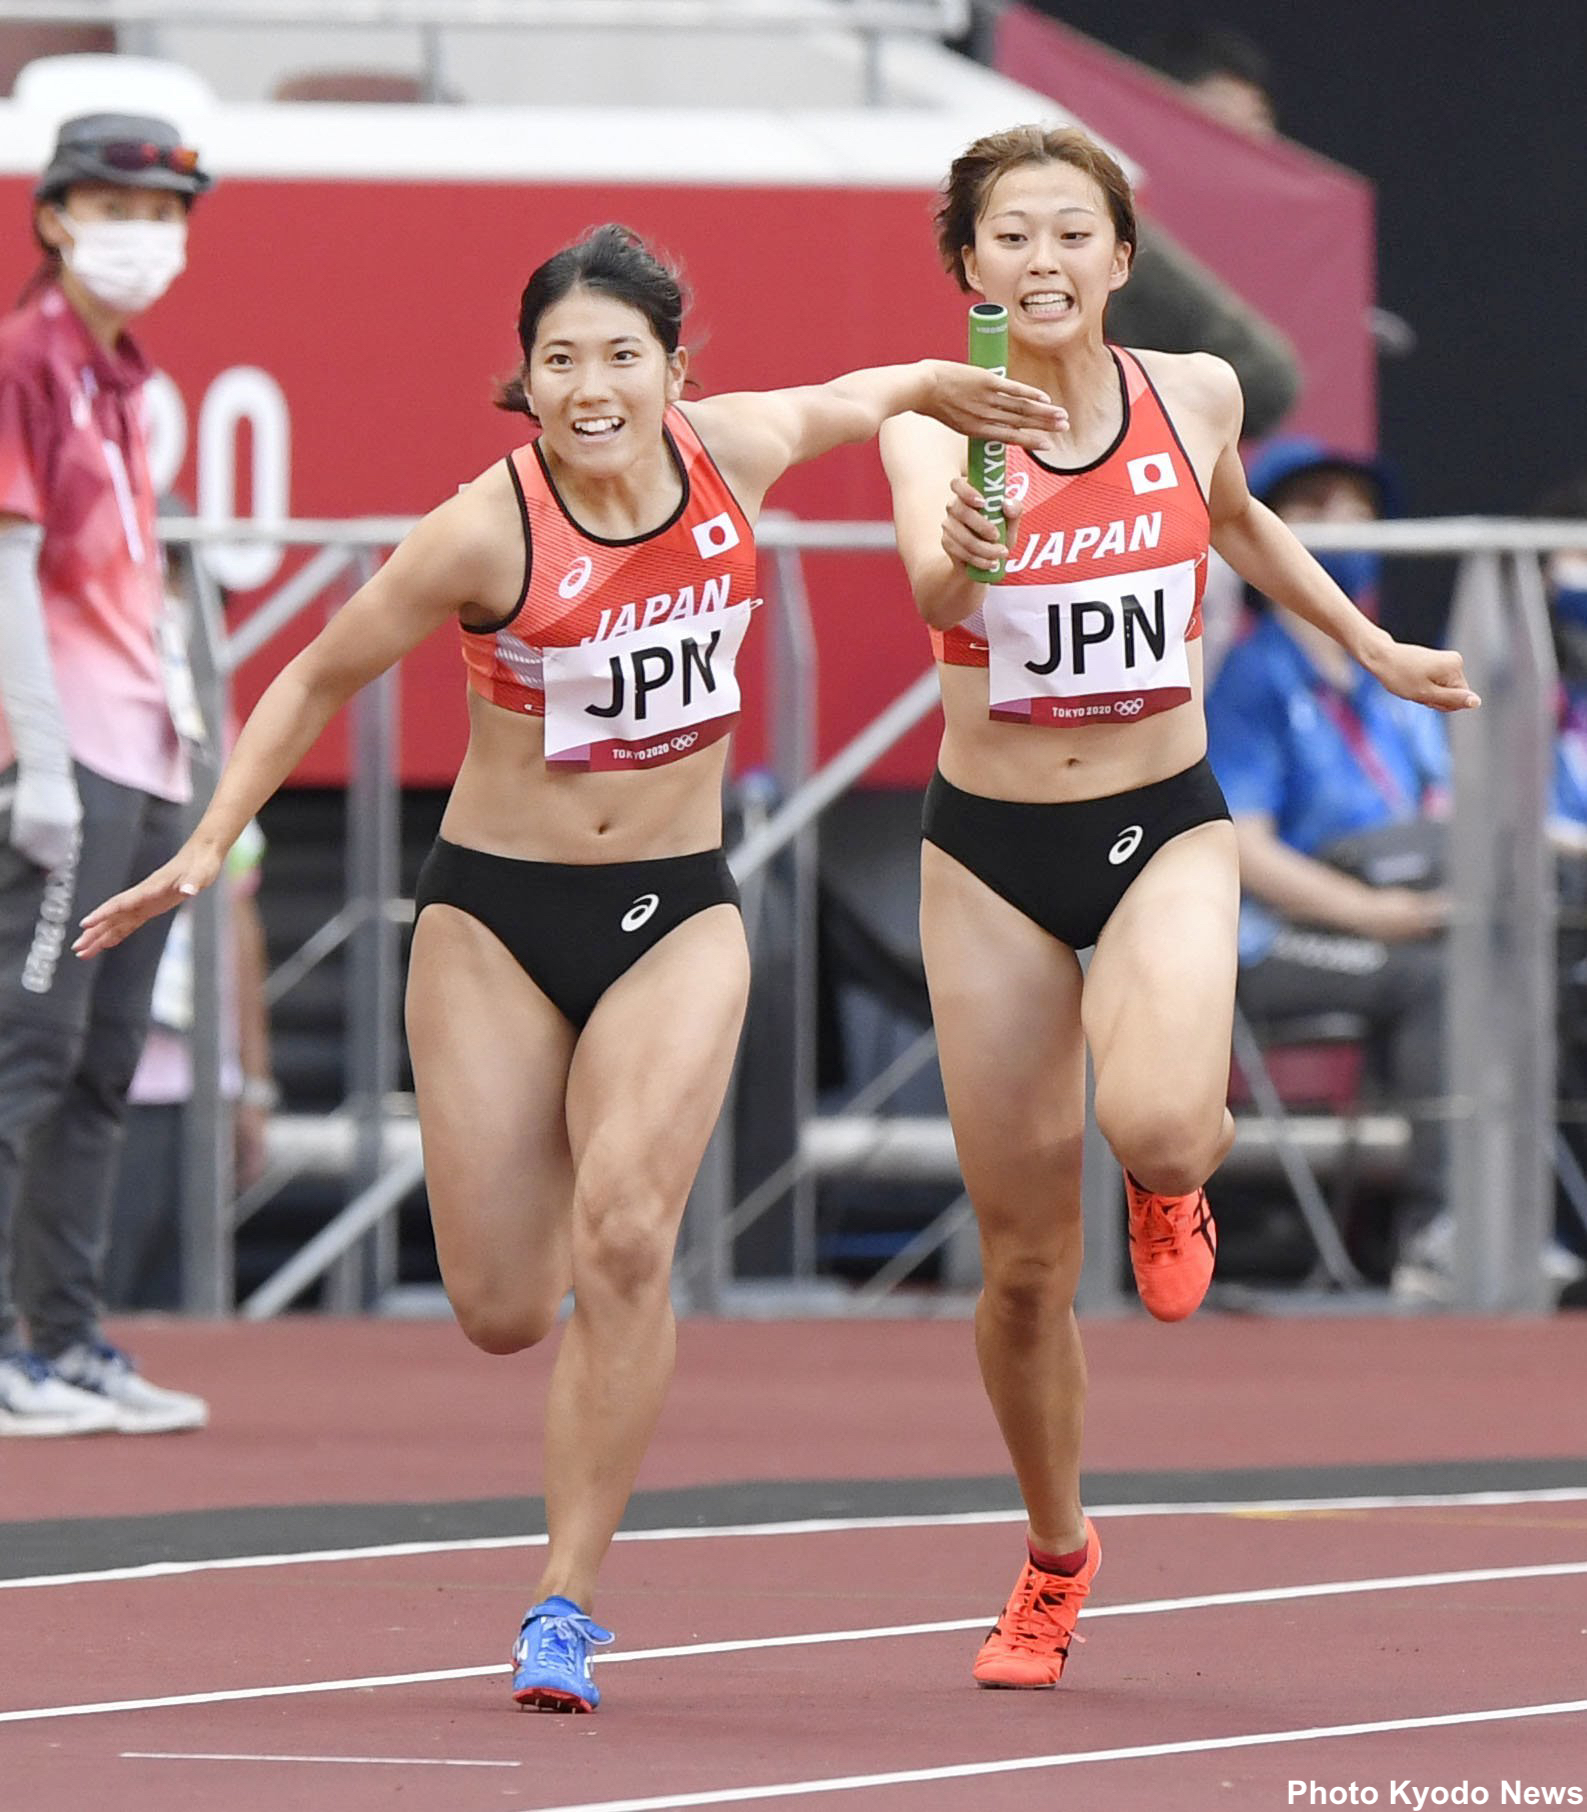 Team Japan 陸上競技 女子4 100mリレー 予選敗退 43秒44とシーズンベストを記録するも 1組7着で決勝進出ならず がんばれニッポン Tokyo Teamjapan オリンピック T Co X0o7rrq7v8 Twitter